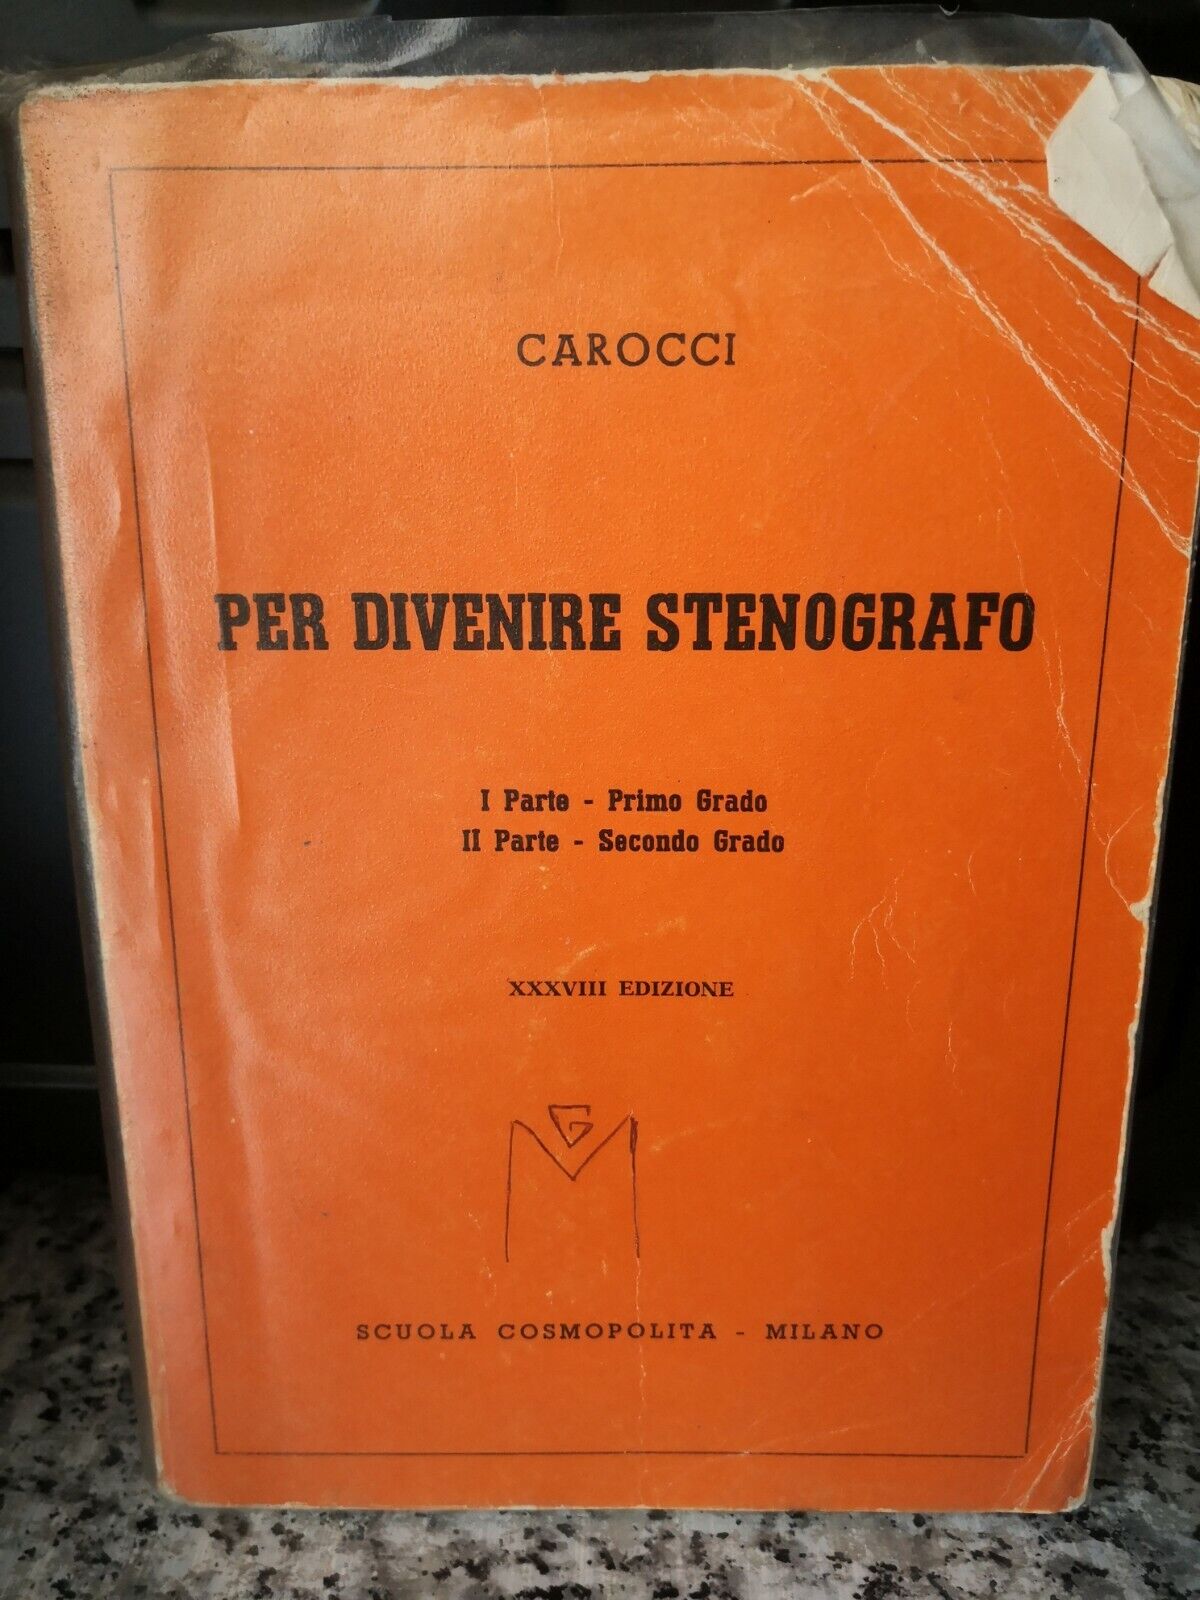  Per divenire Stenografo XXXVIII edizione di Carocci,    Scuola Cosmopolita-f